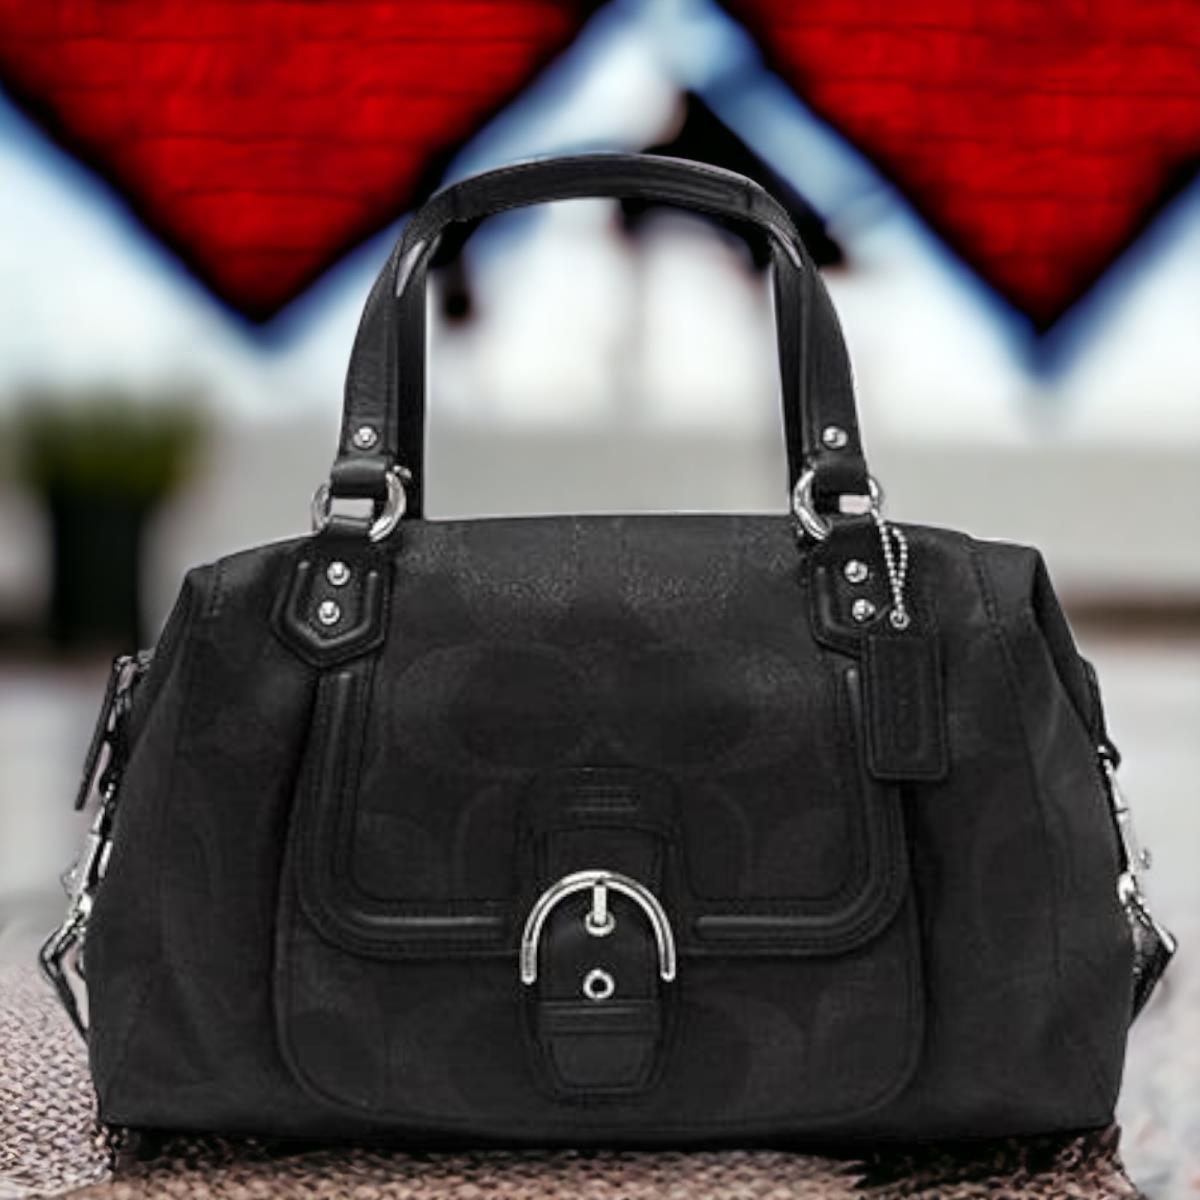 Coach Bag Black Signature Campbell Large Handbag F26243 - Handle/Strap: Black, Exterior: Black